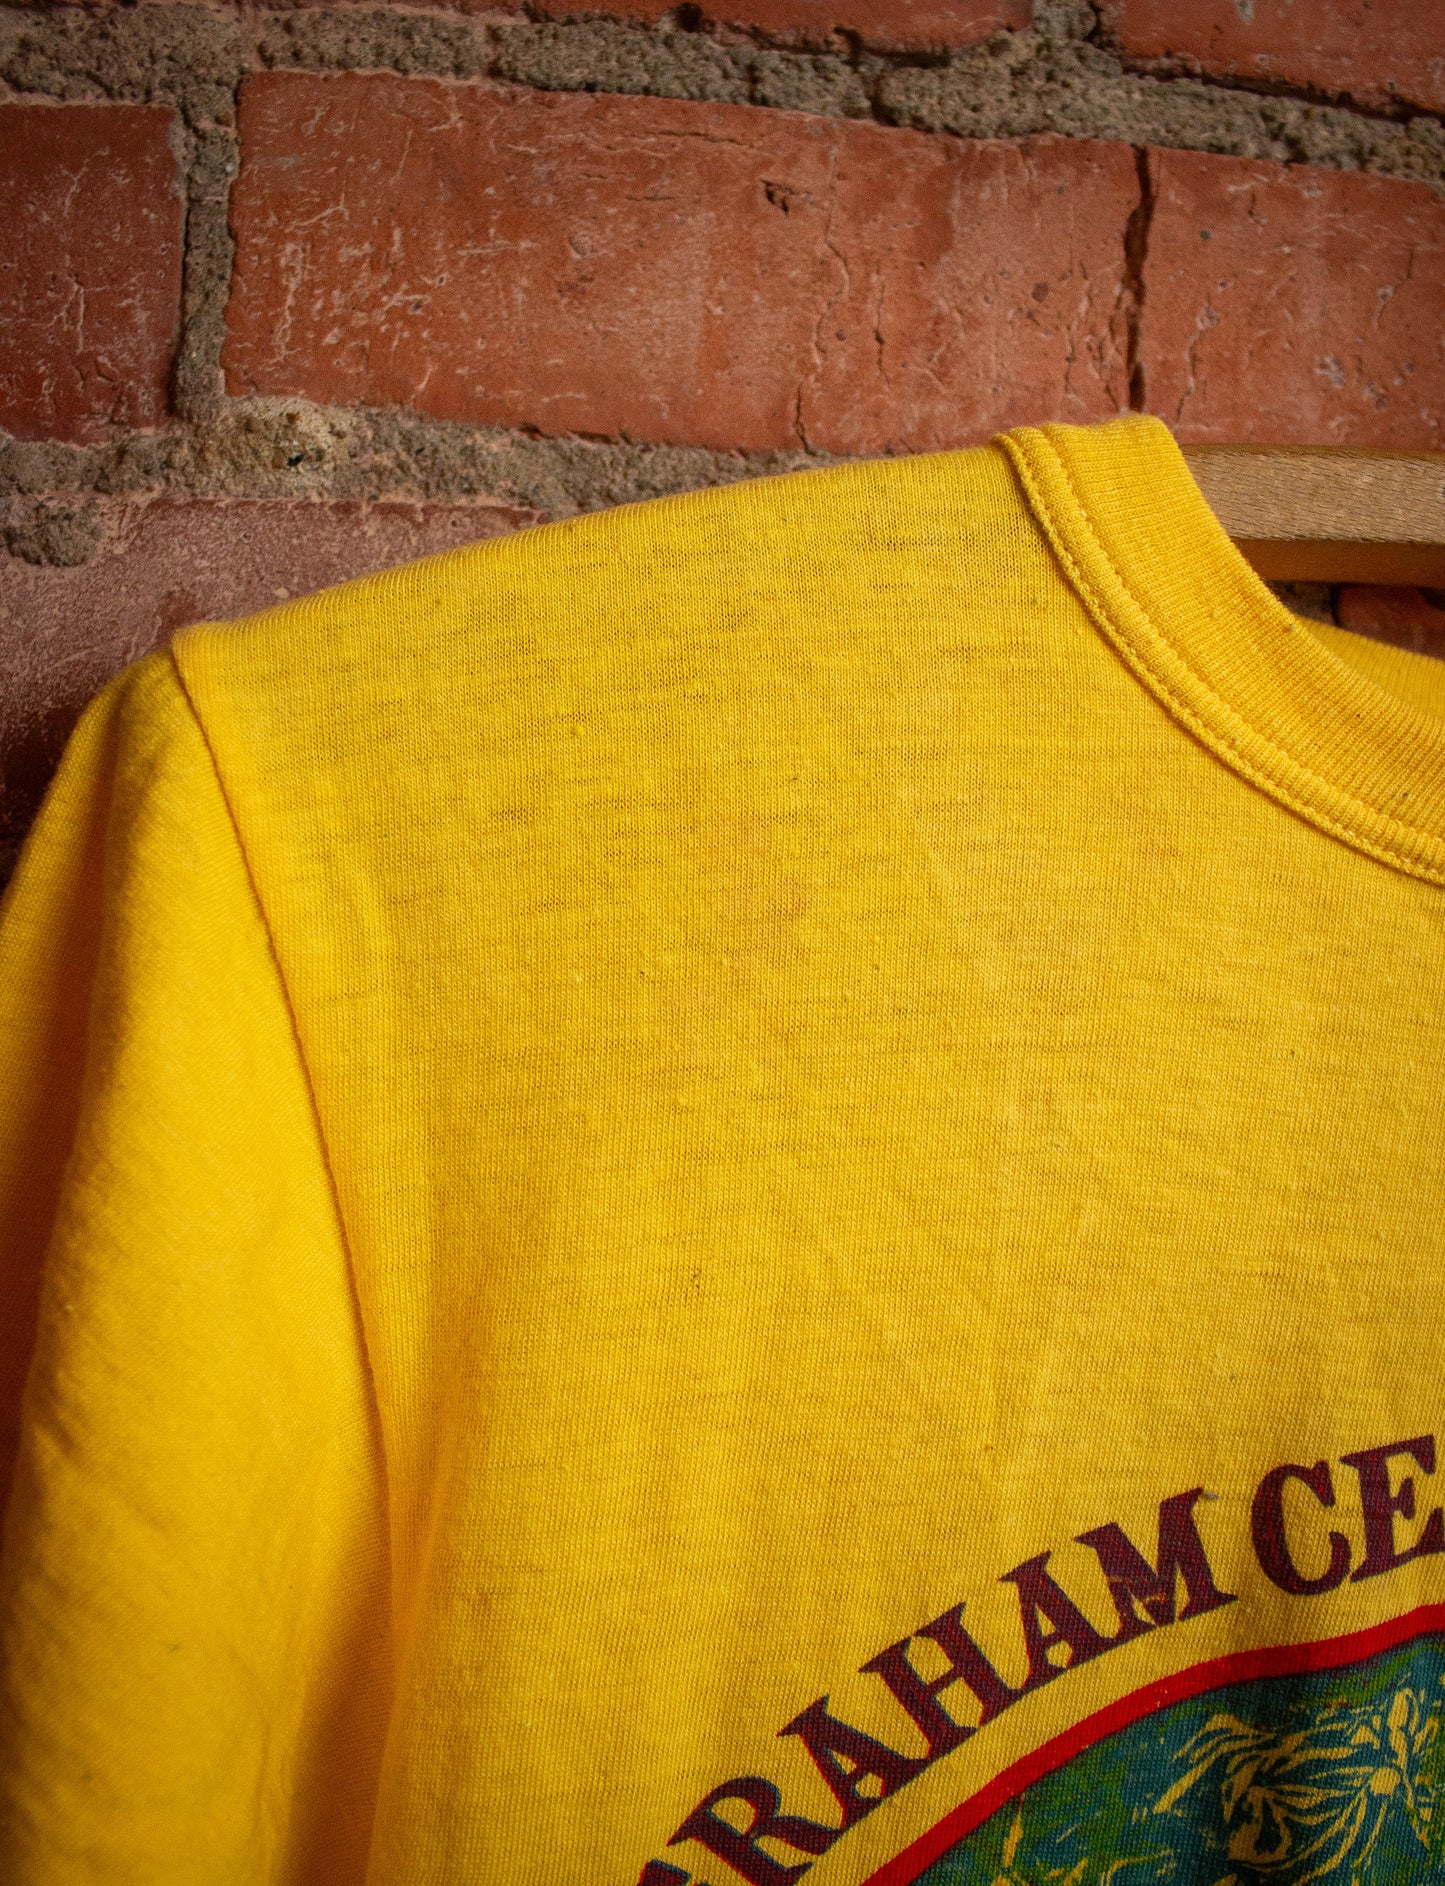 Vintage Graham Central Station Concert T-Shirt XS